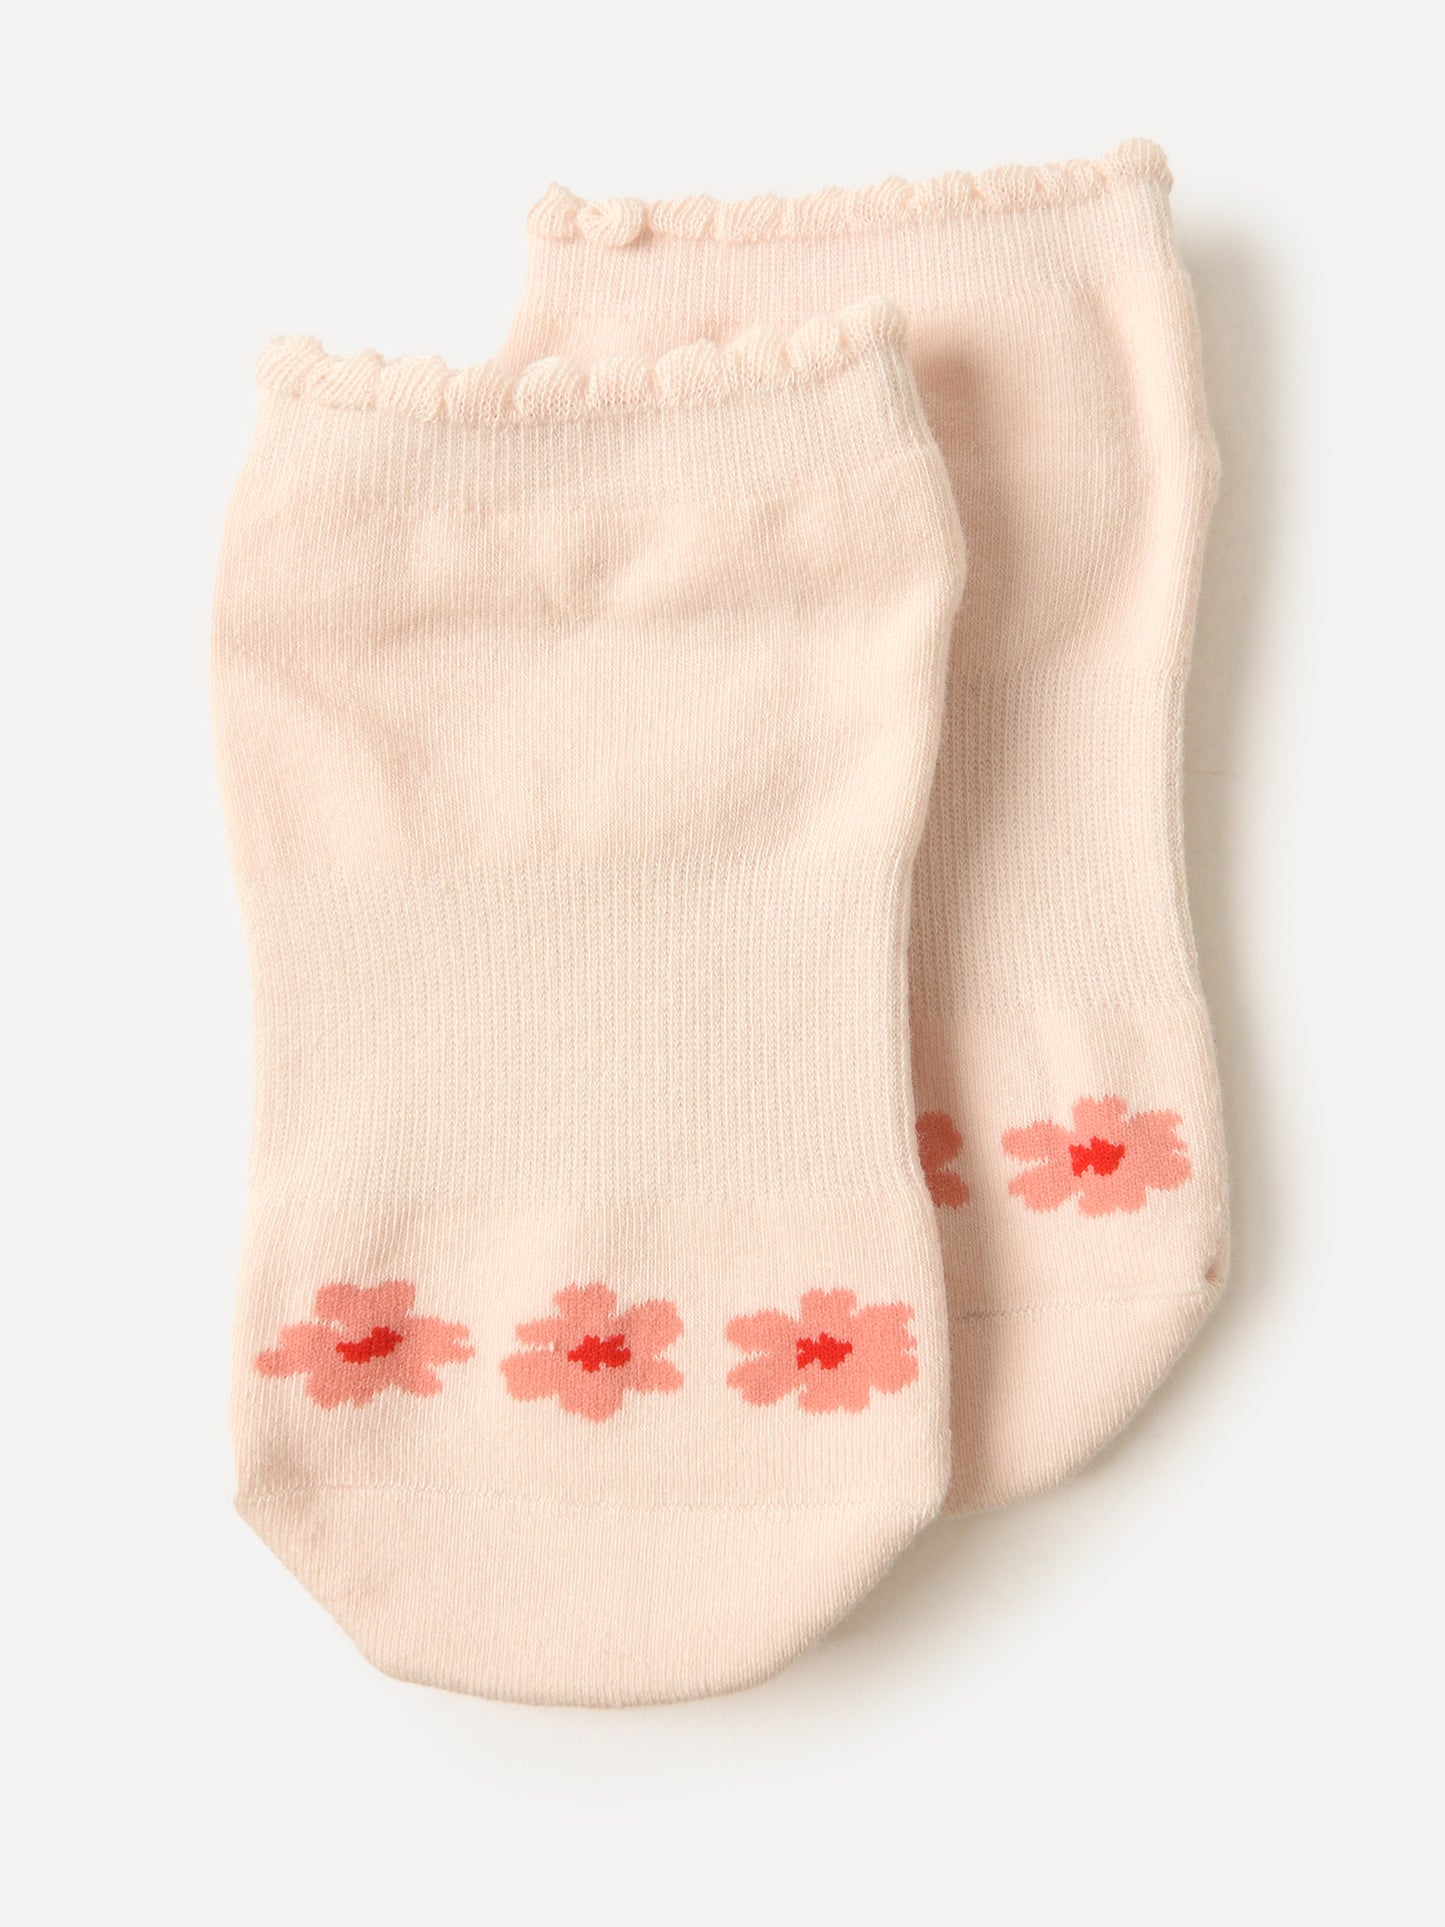 Pointe Studio Women's Blossom Full Foot Grip Socks